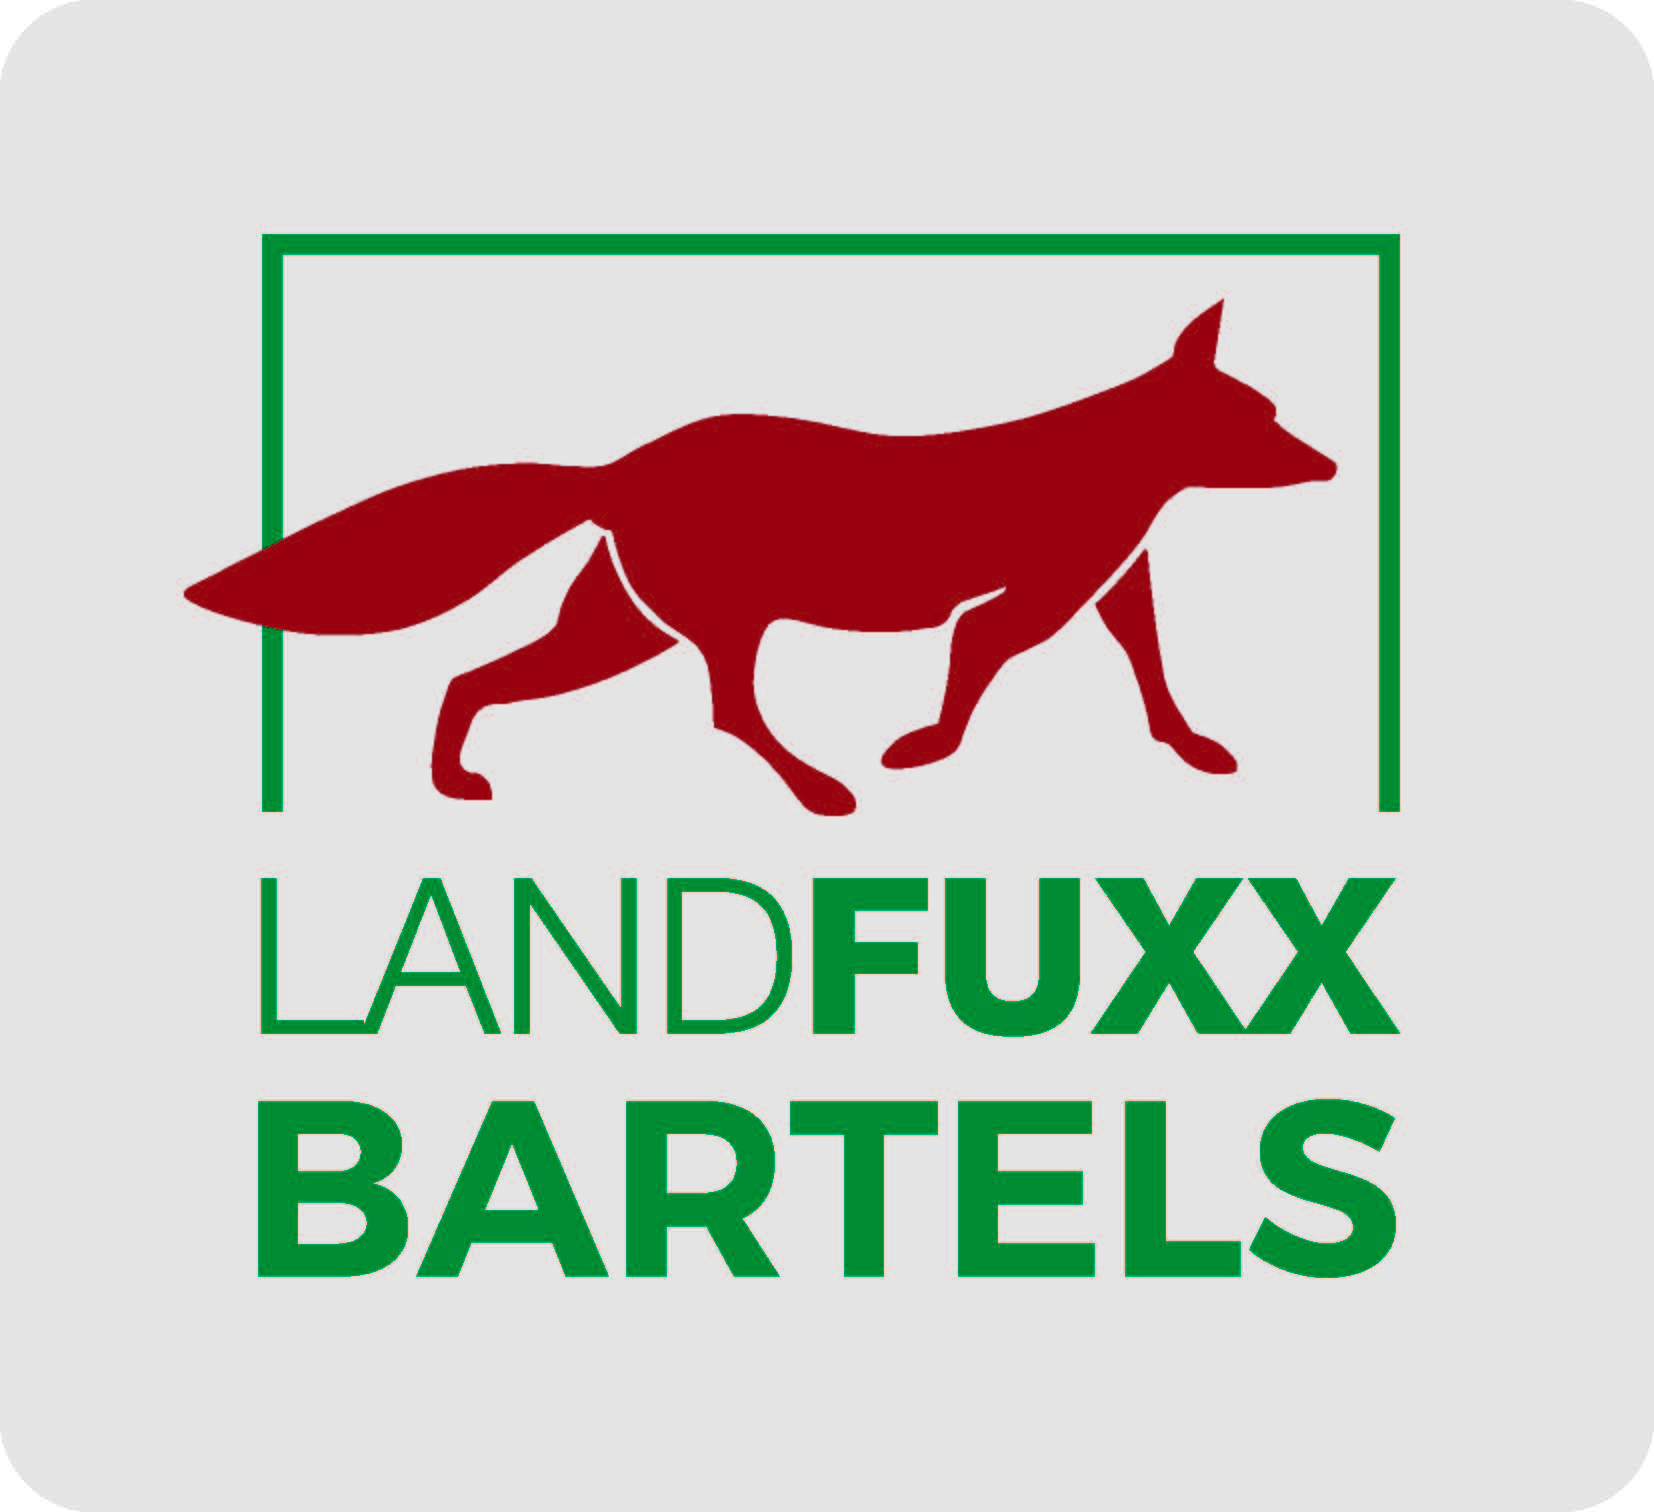 Logo Landfuxx Bartels-roter Fuchs und Schriftzug